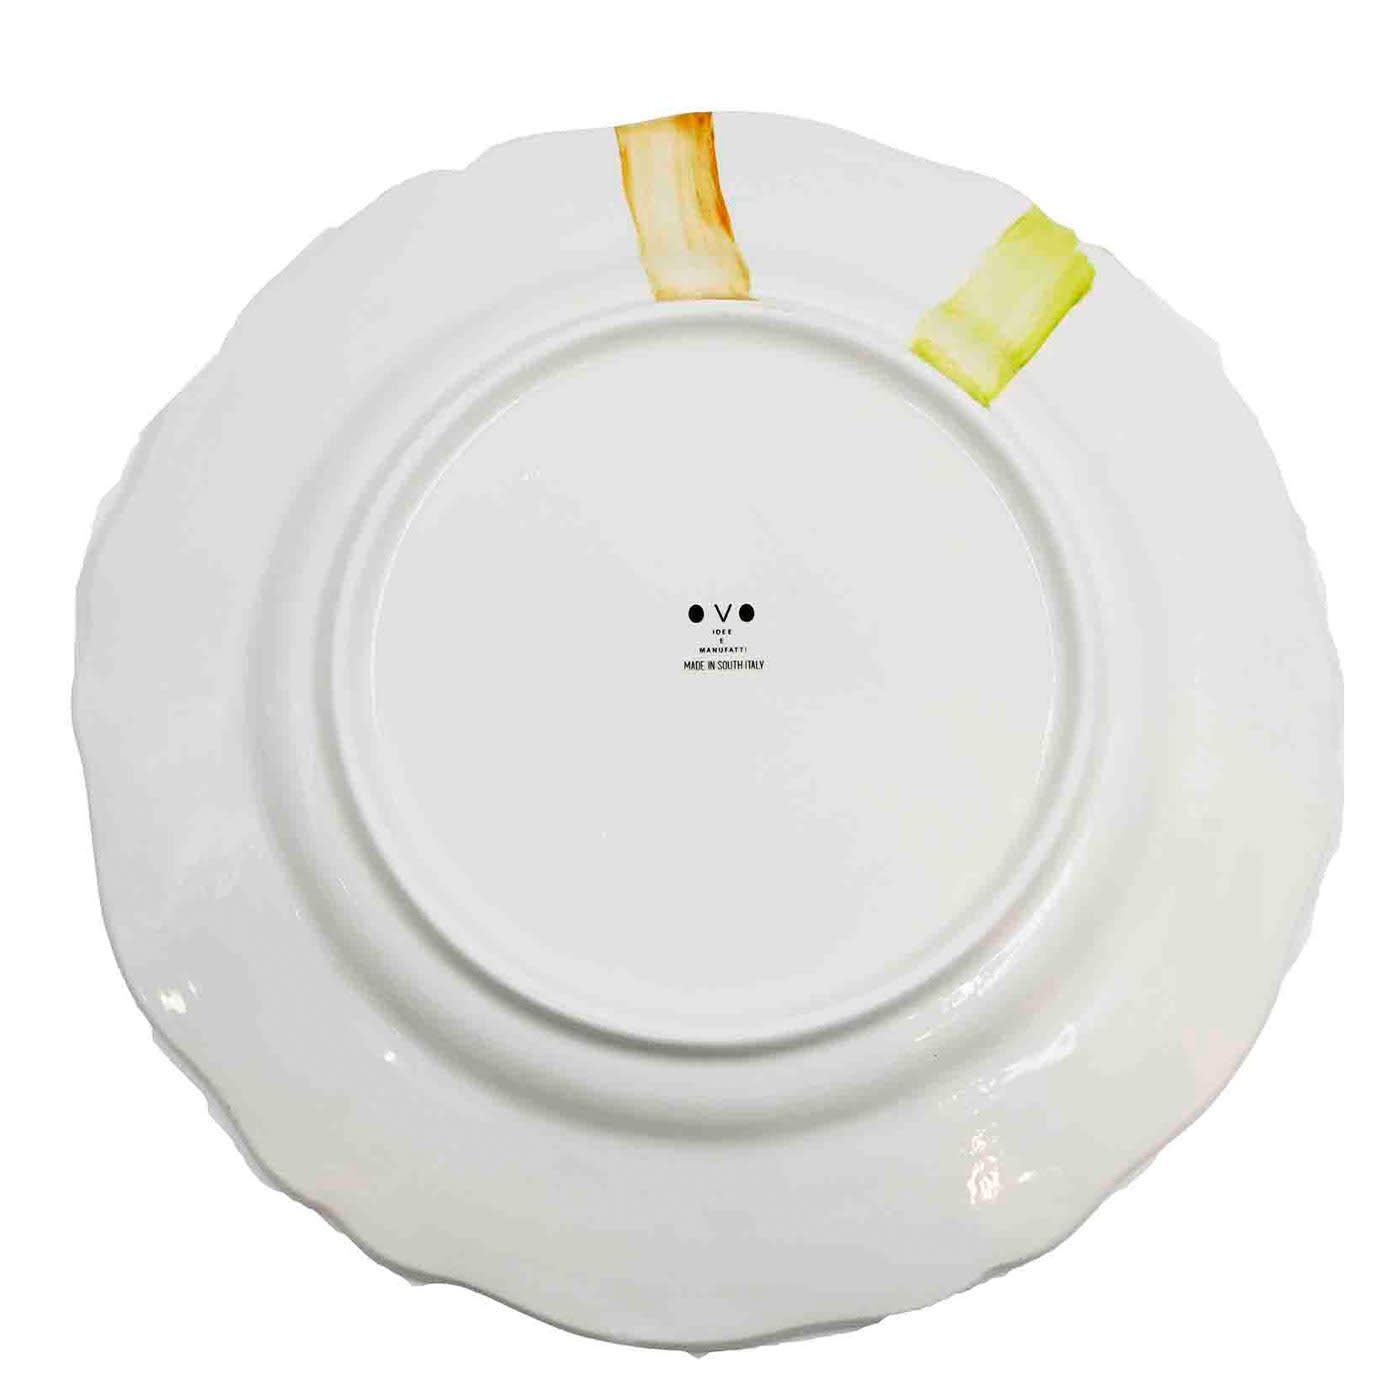 Italian Handcrafted Premium Ceramic Plate